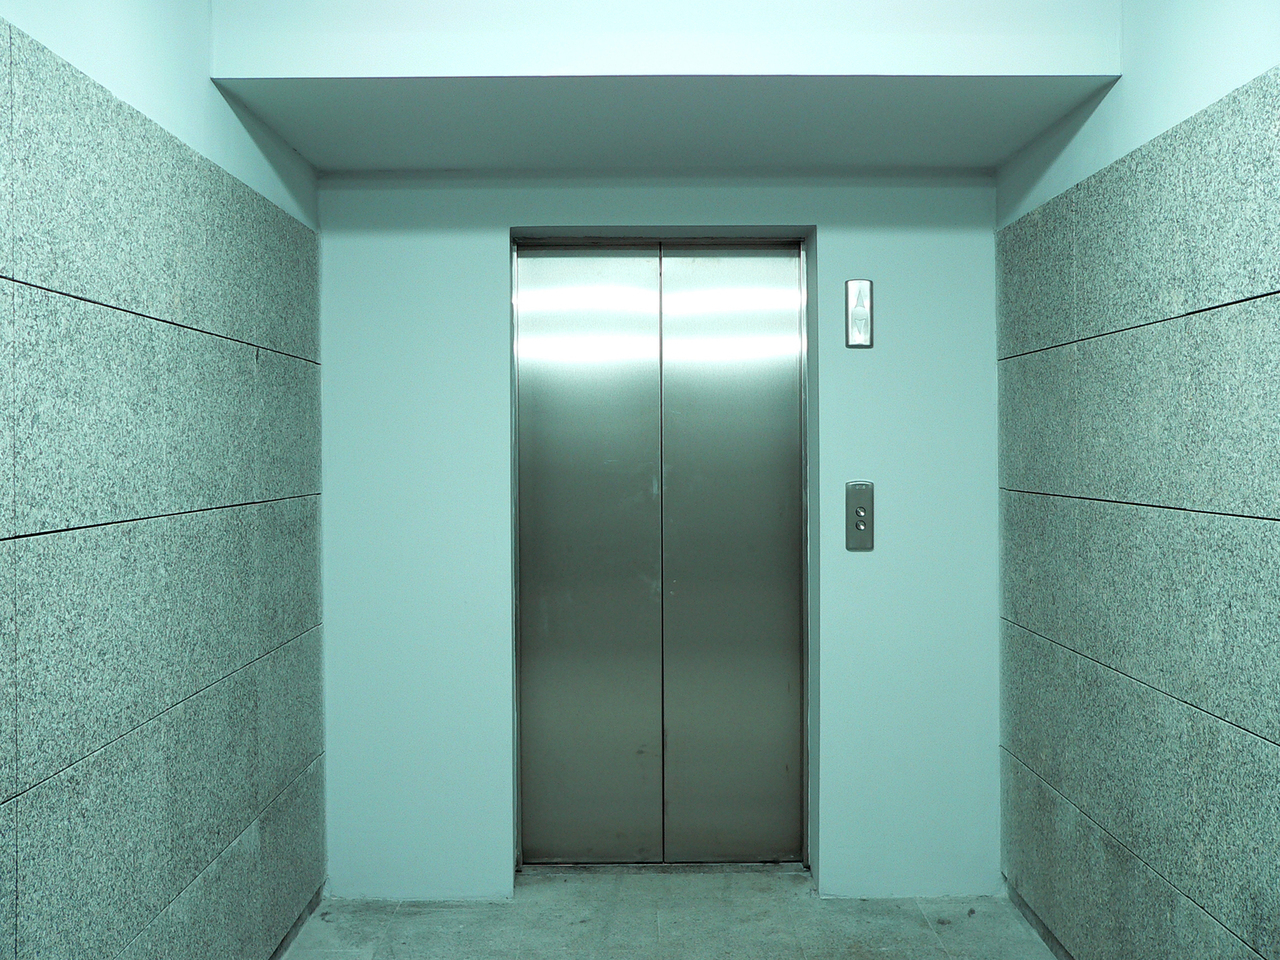 Не закрываются двери лифта: в какие ведомства можно обратиться?